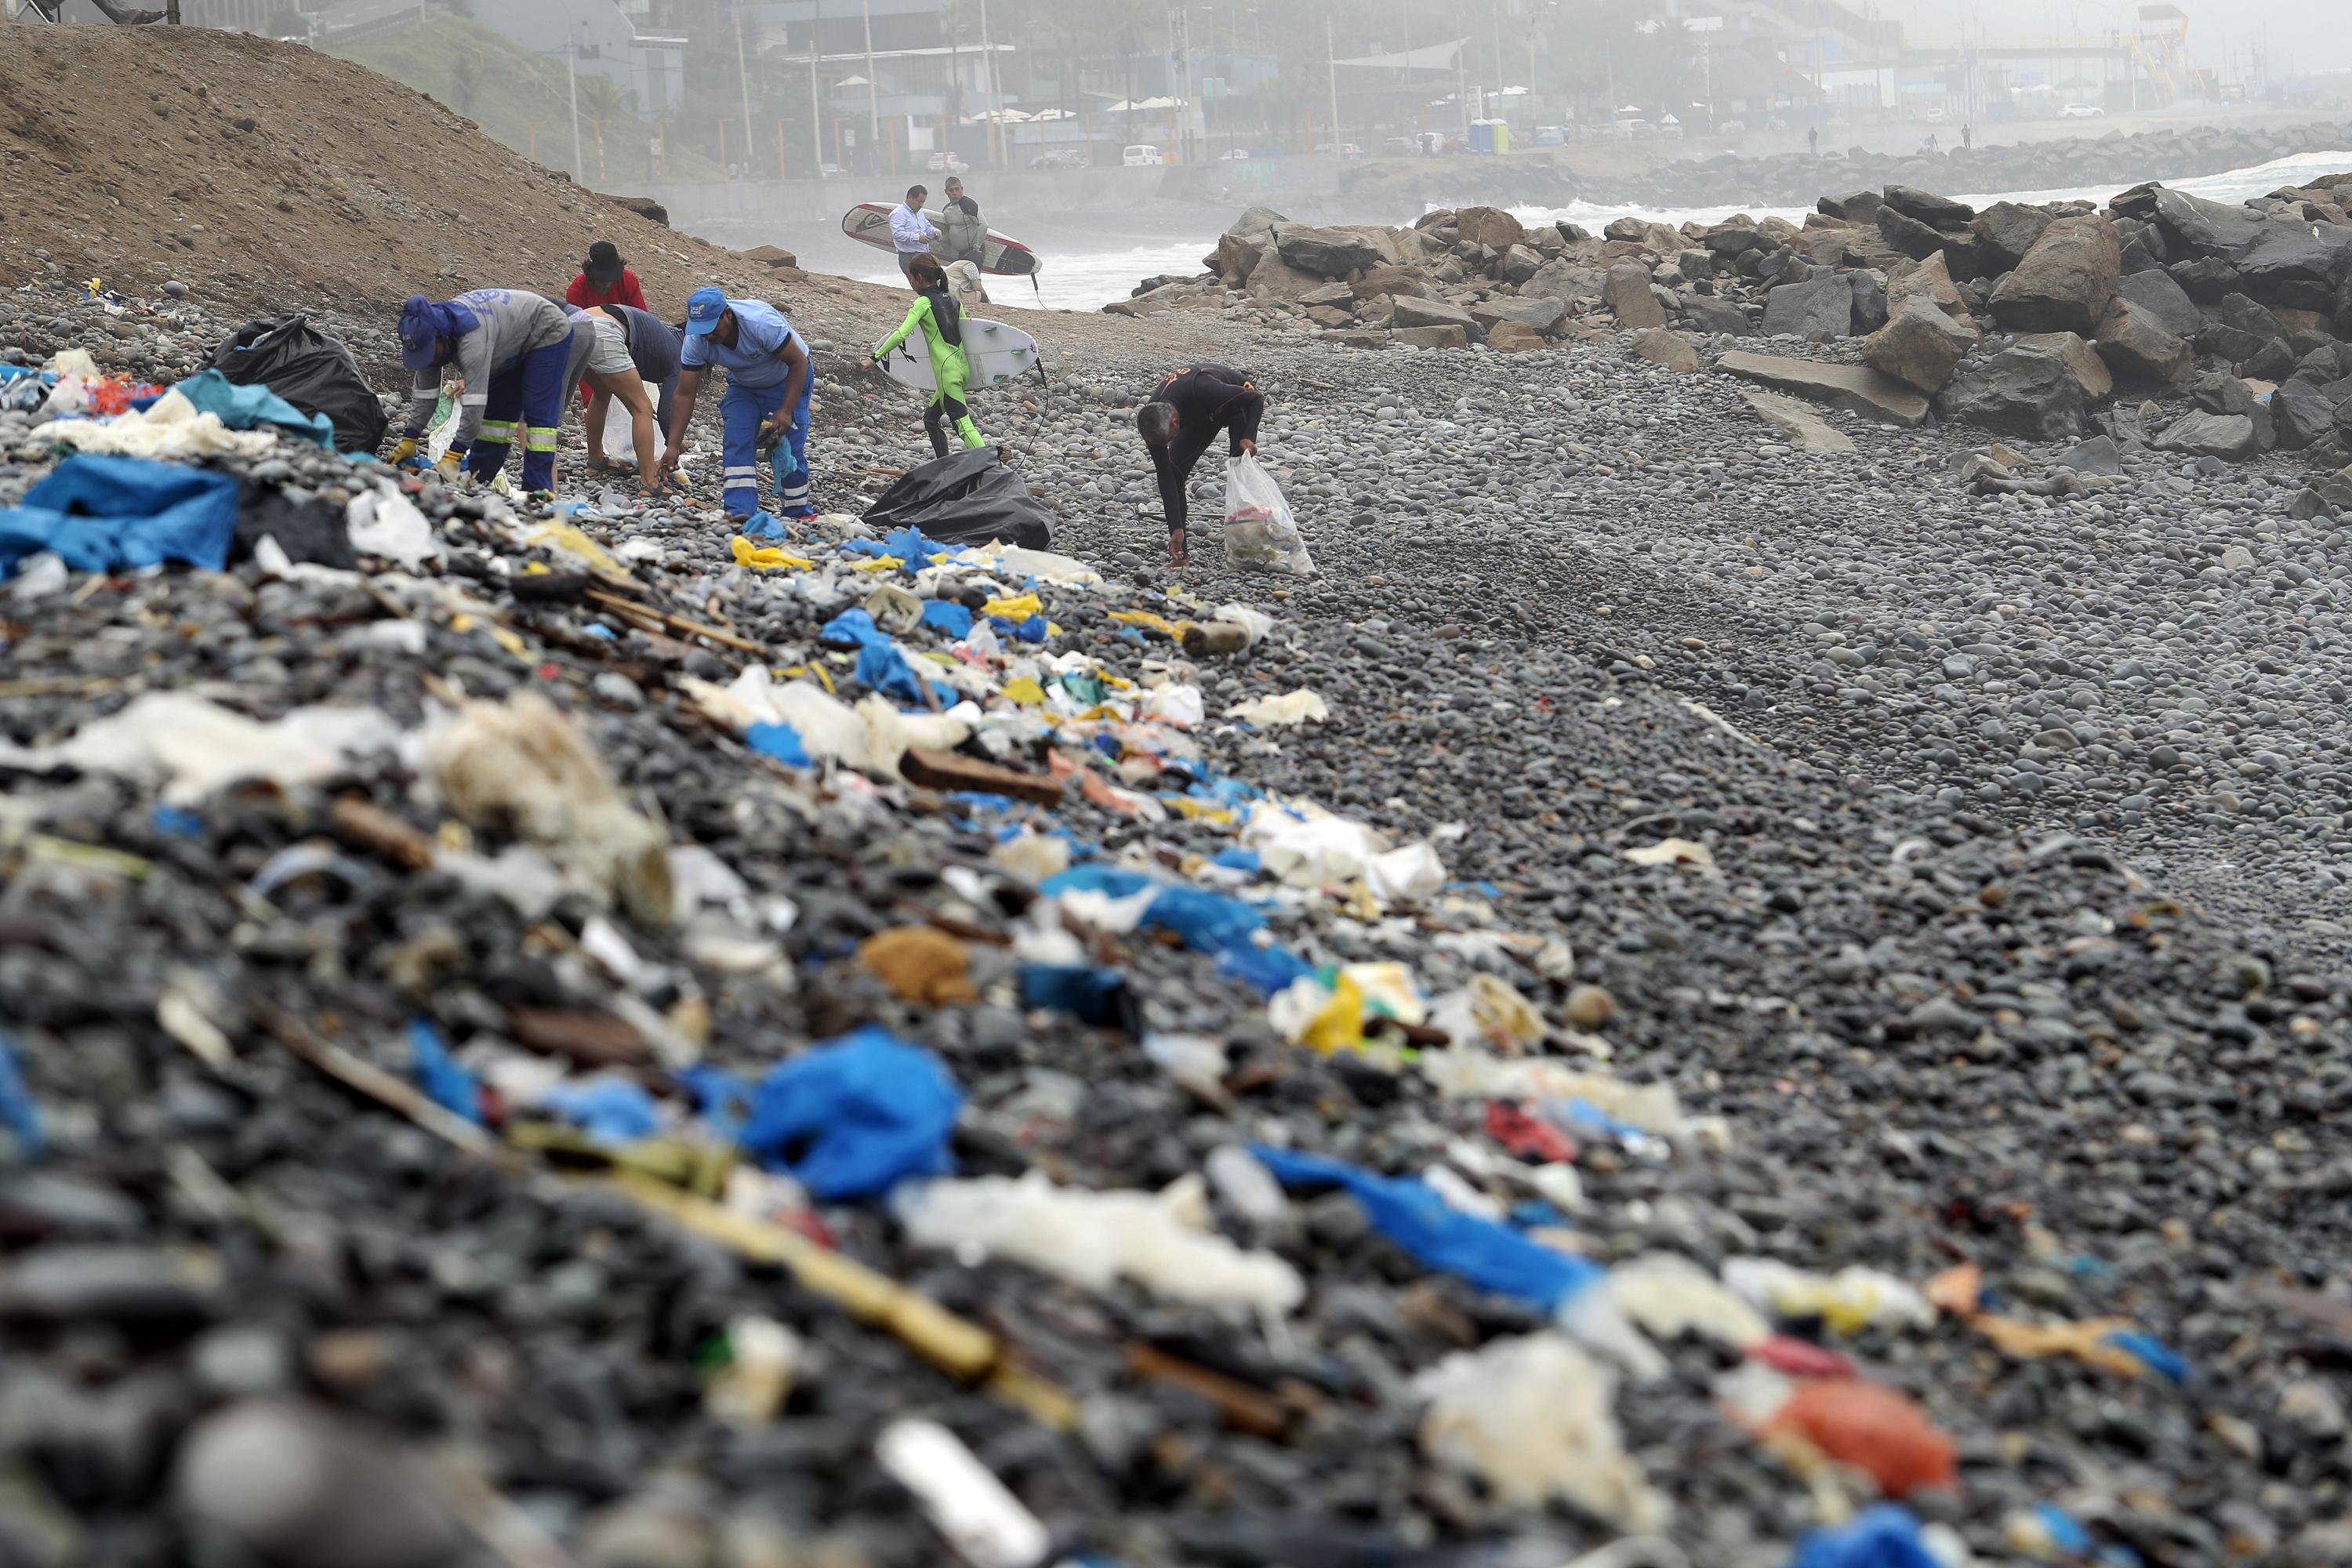 Oleaje anómalo llevó gran cantidad de desperdicios hasta varias playas de Miraflores, en la Costa Verde. (Foto: Rolly Reyna / El Comercio)